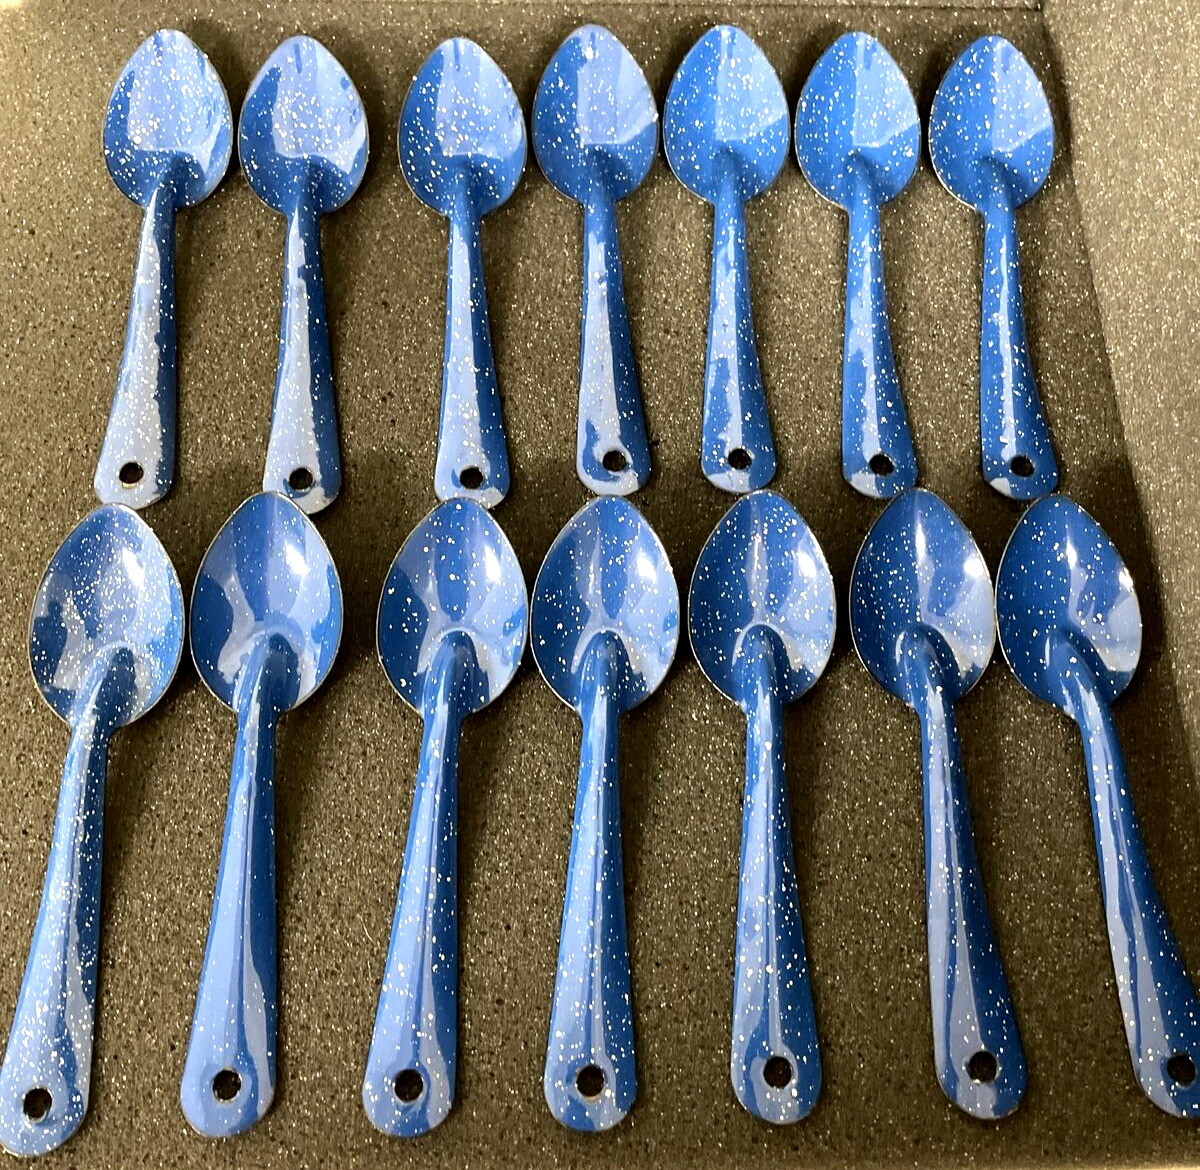 Blue & White Enamelware Speckled Spoons Set Of 14 6” Vintage